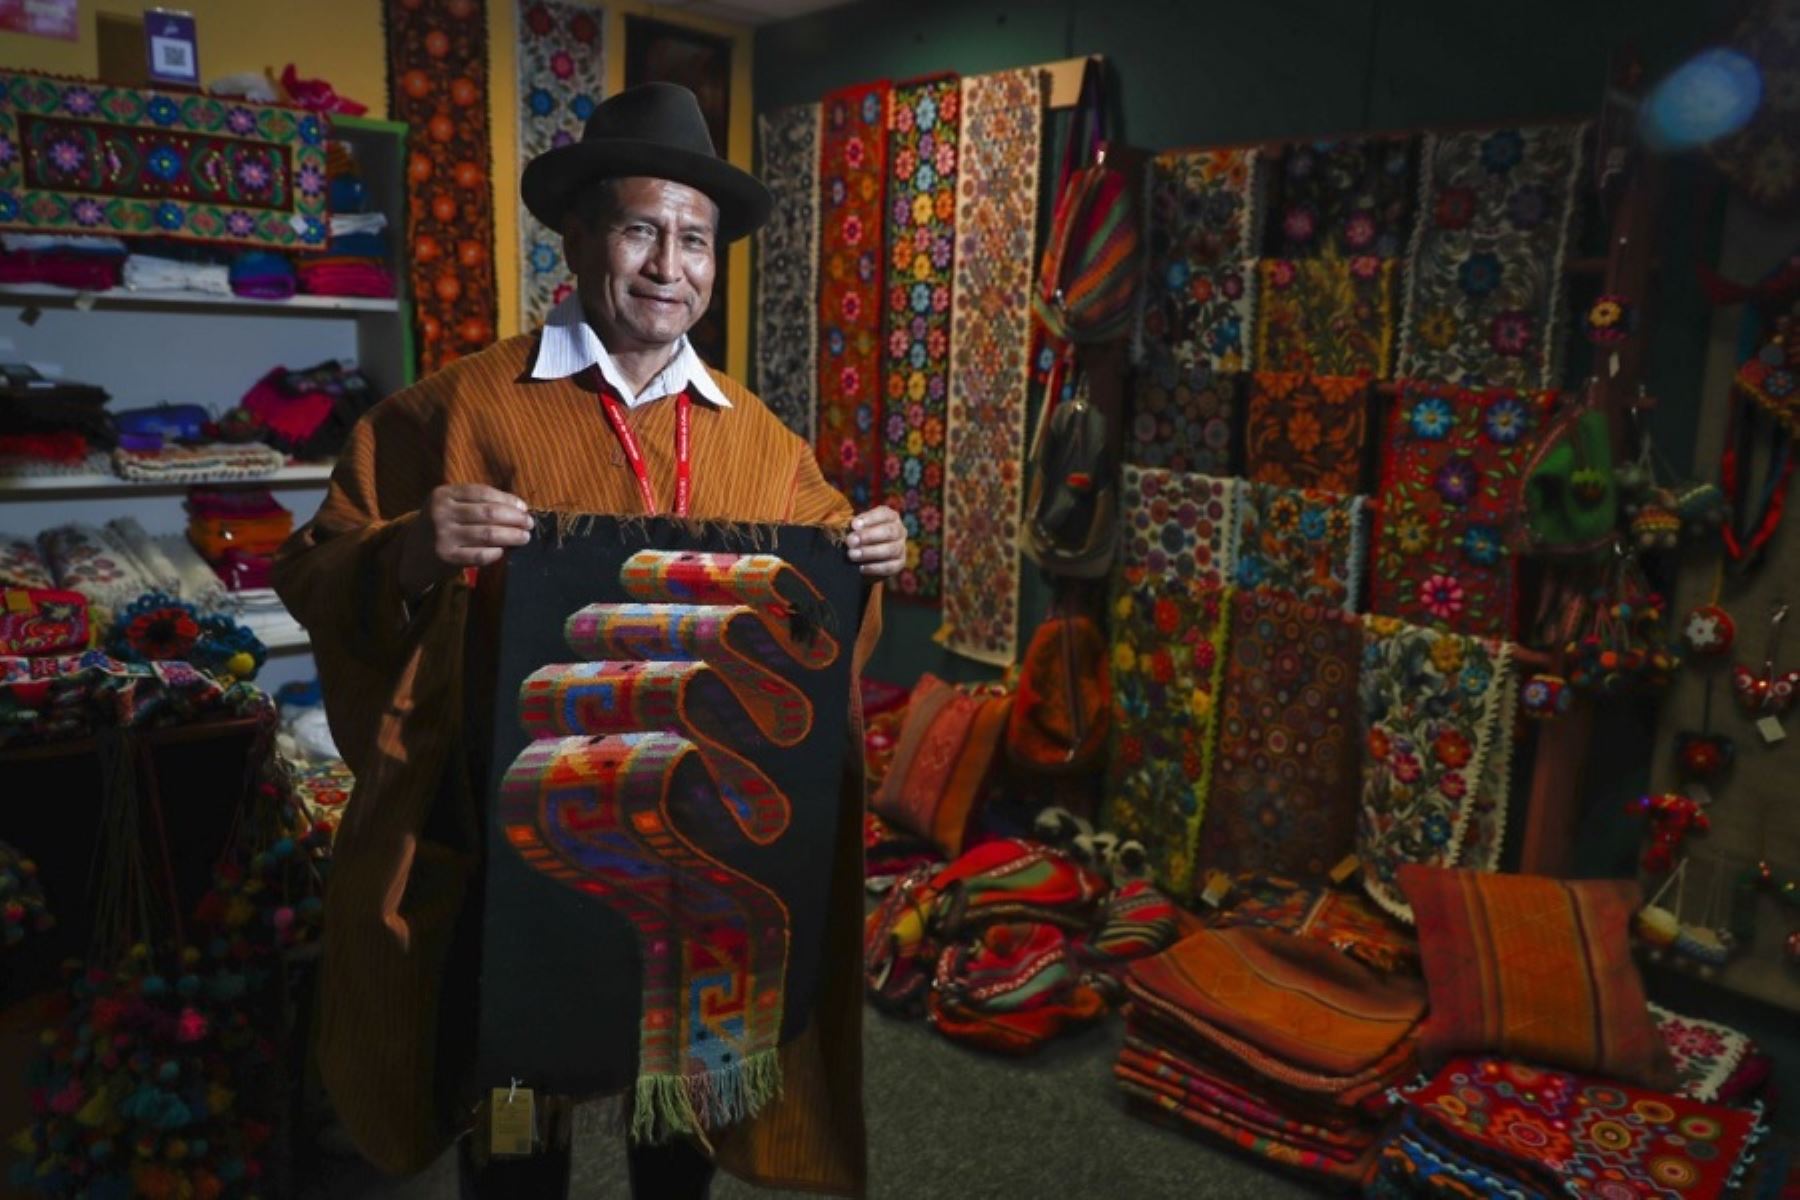 El Ministerio de Cultura declaró Patrimonio Cultural de la Nación a los conocimientos, saberes y técnicas de tejido del tapiz ayacuchano, por su original valor estético y por ser una expresión de la memoria histórica y la identidad cultural del pueblo de Ayacucho.